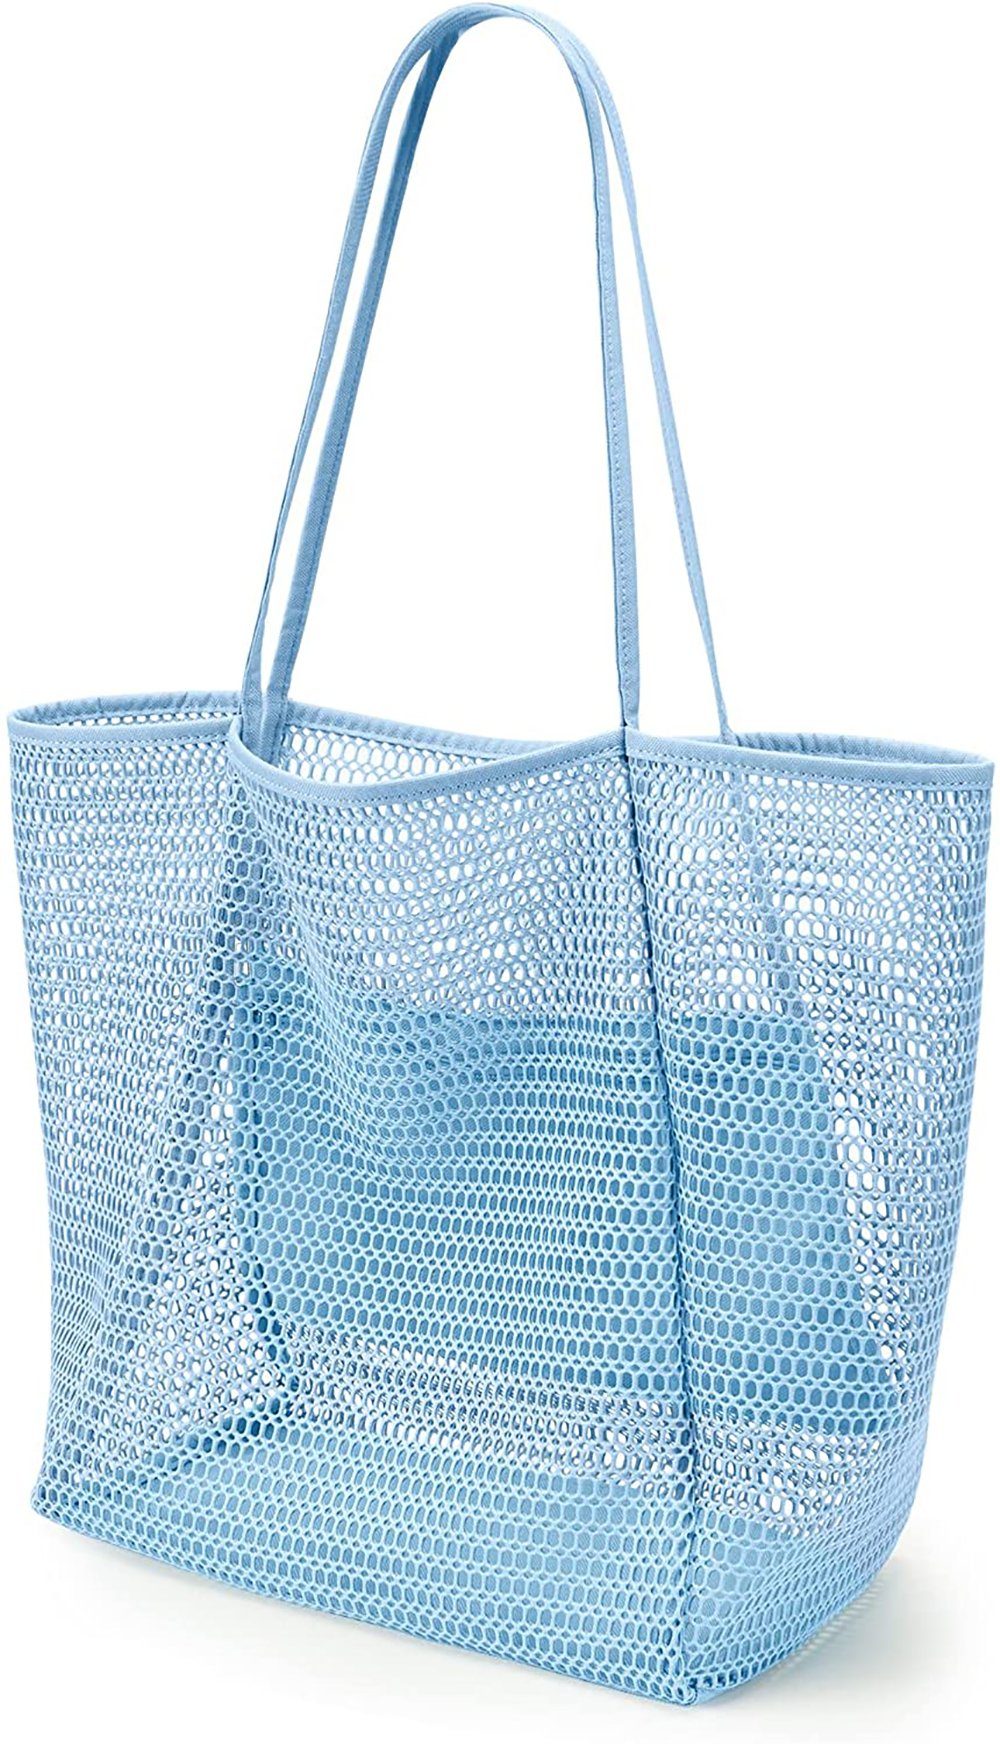 KALIDI Mesh Strandtasche Groß mit Reißverschluss Innentasche Faltbare Handtaschen Einkaufstasche Beach Tote Bag für Strand Familie Shopper Reise 38x35x16cm Umhängetasche Damen Badetasche 